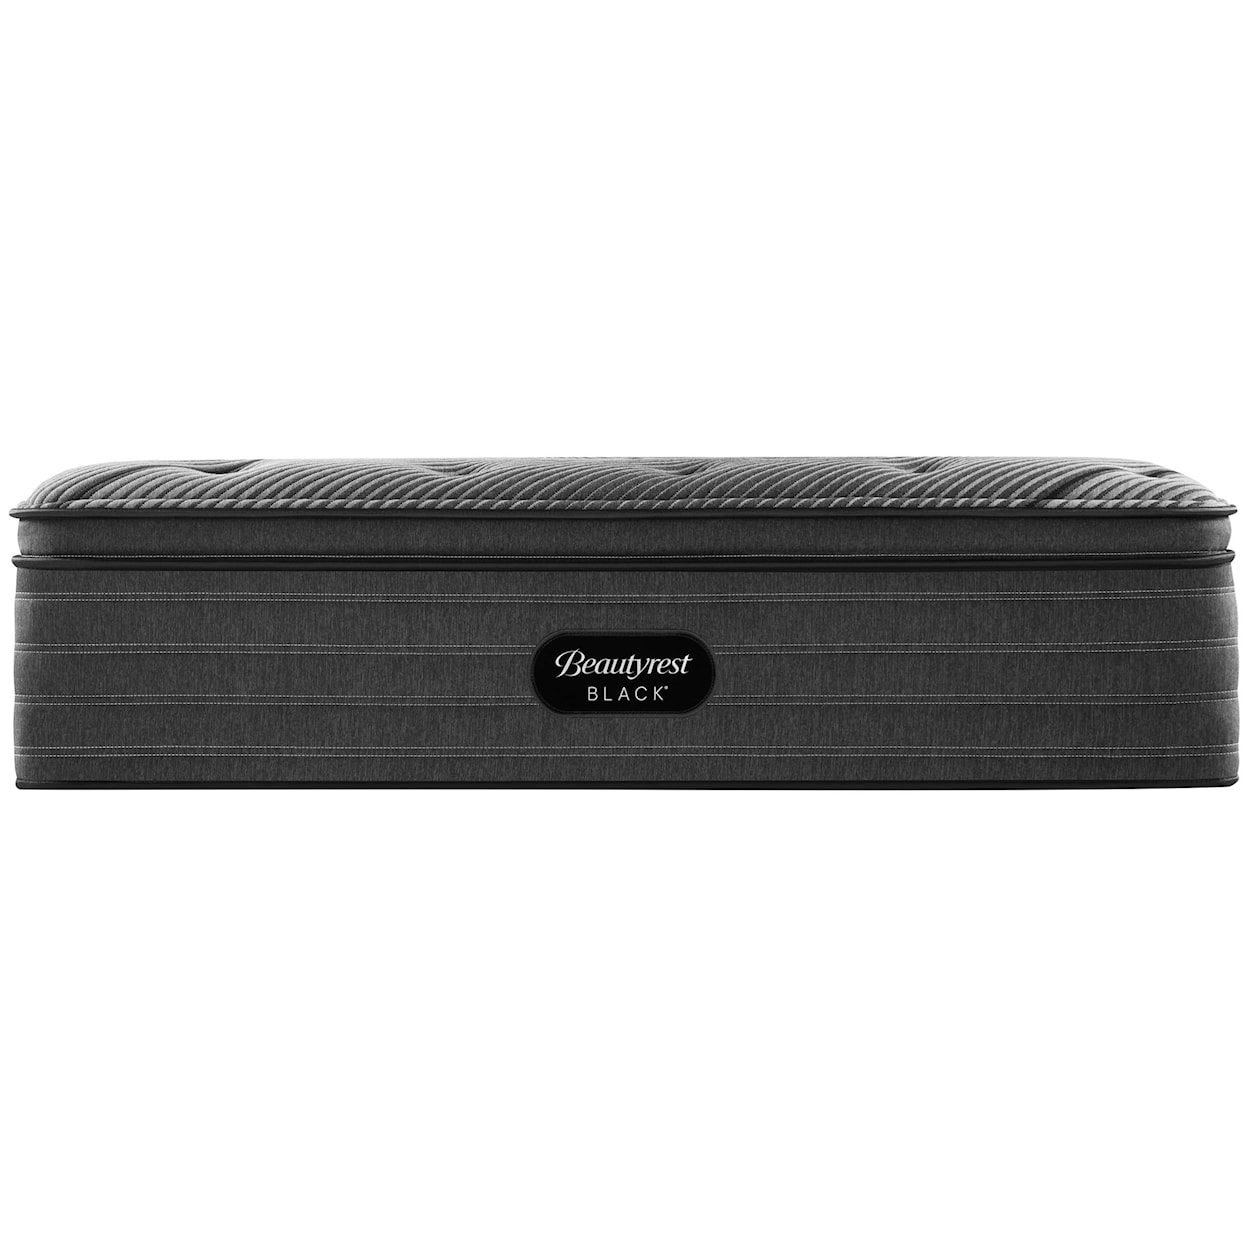 Beautyrest Beautyrest® Black L-Class 14.5" Plush Pillow Top Mattress - King